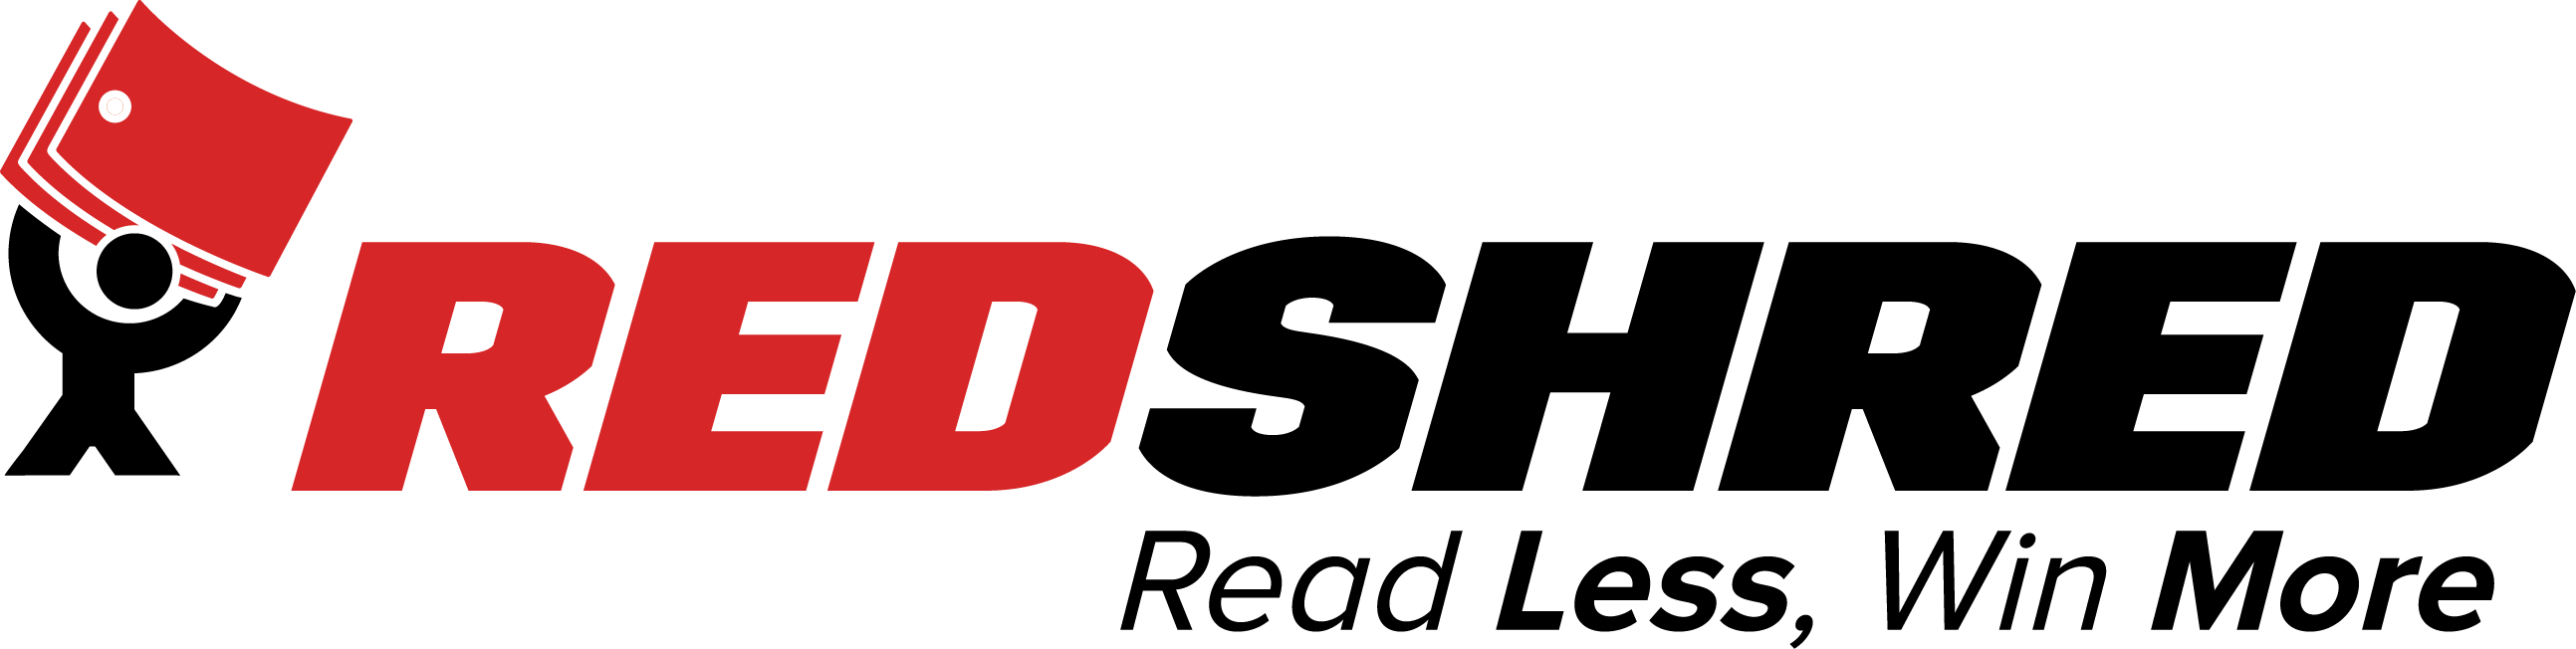 RedShred logo